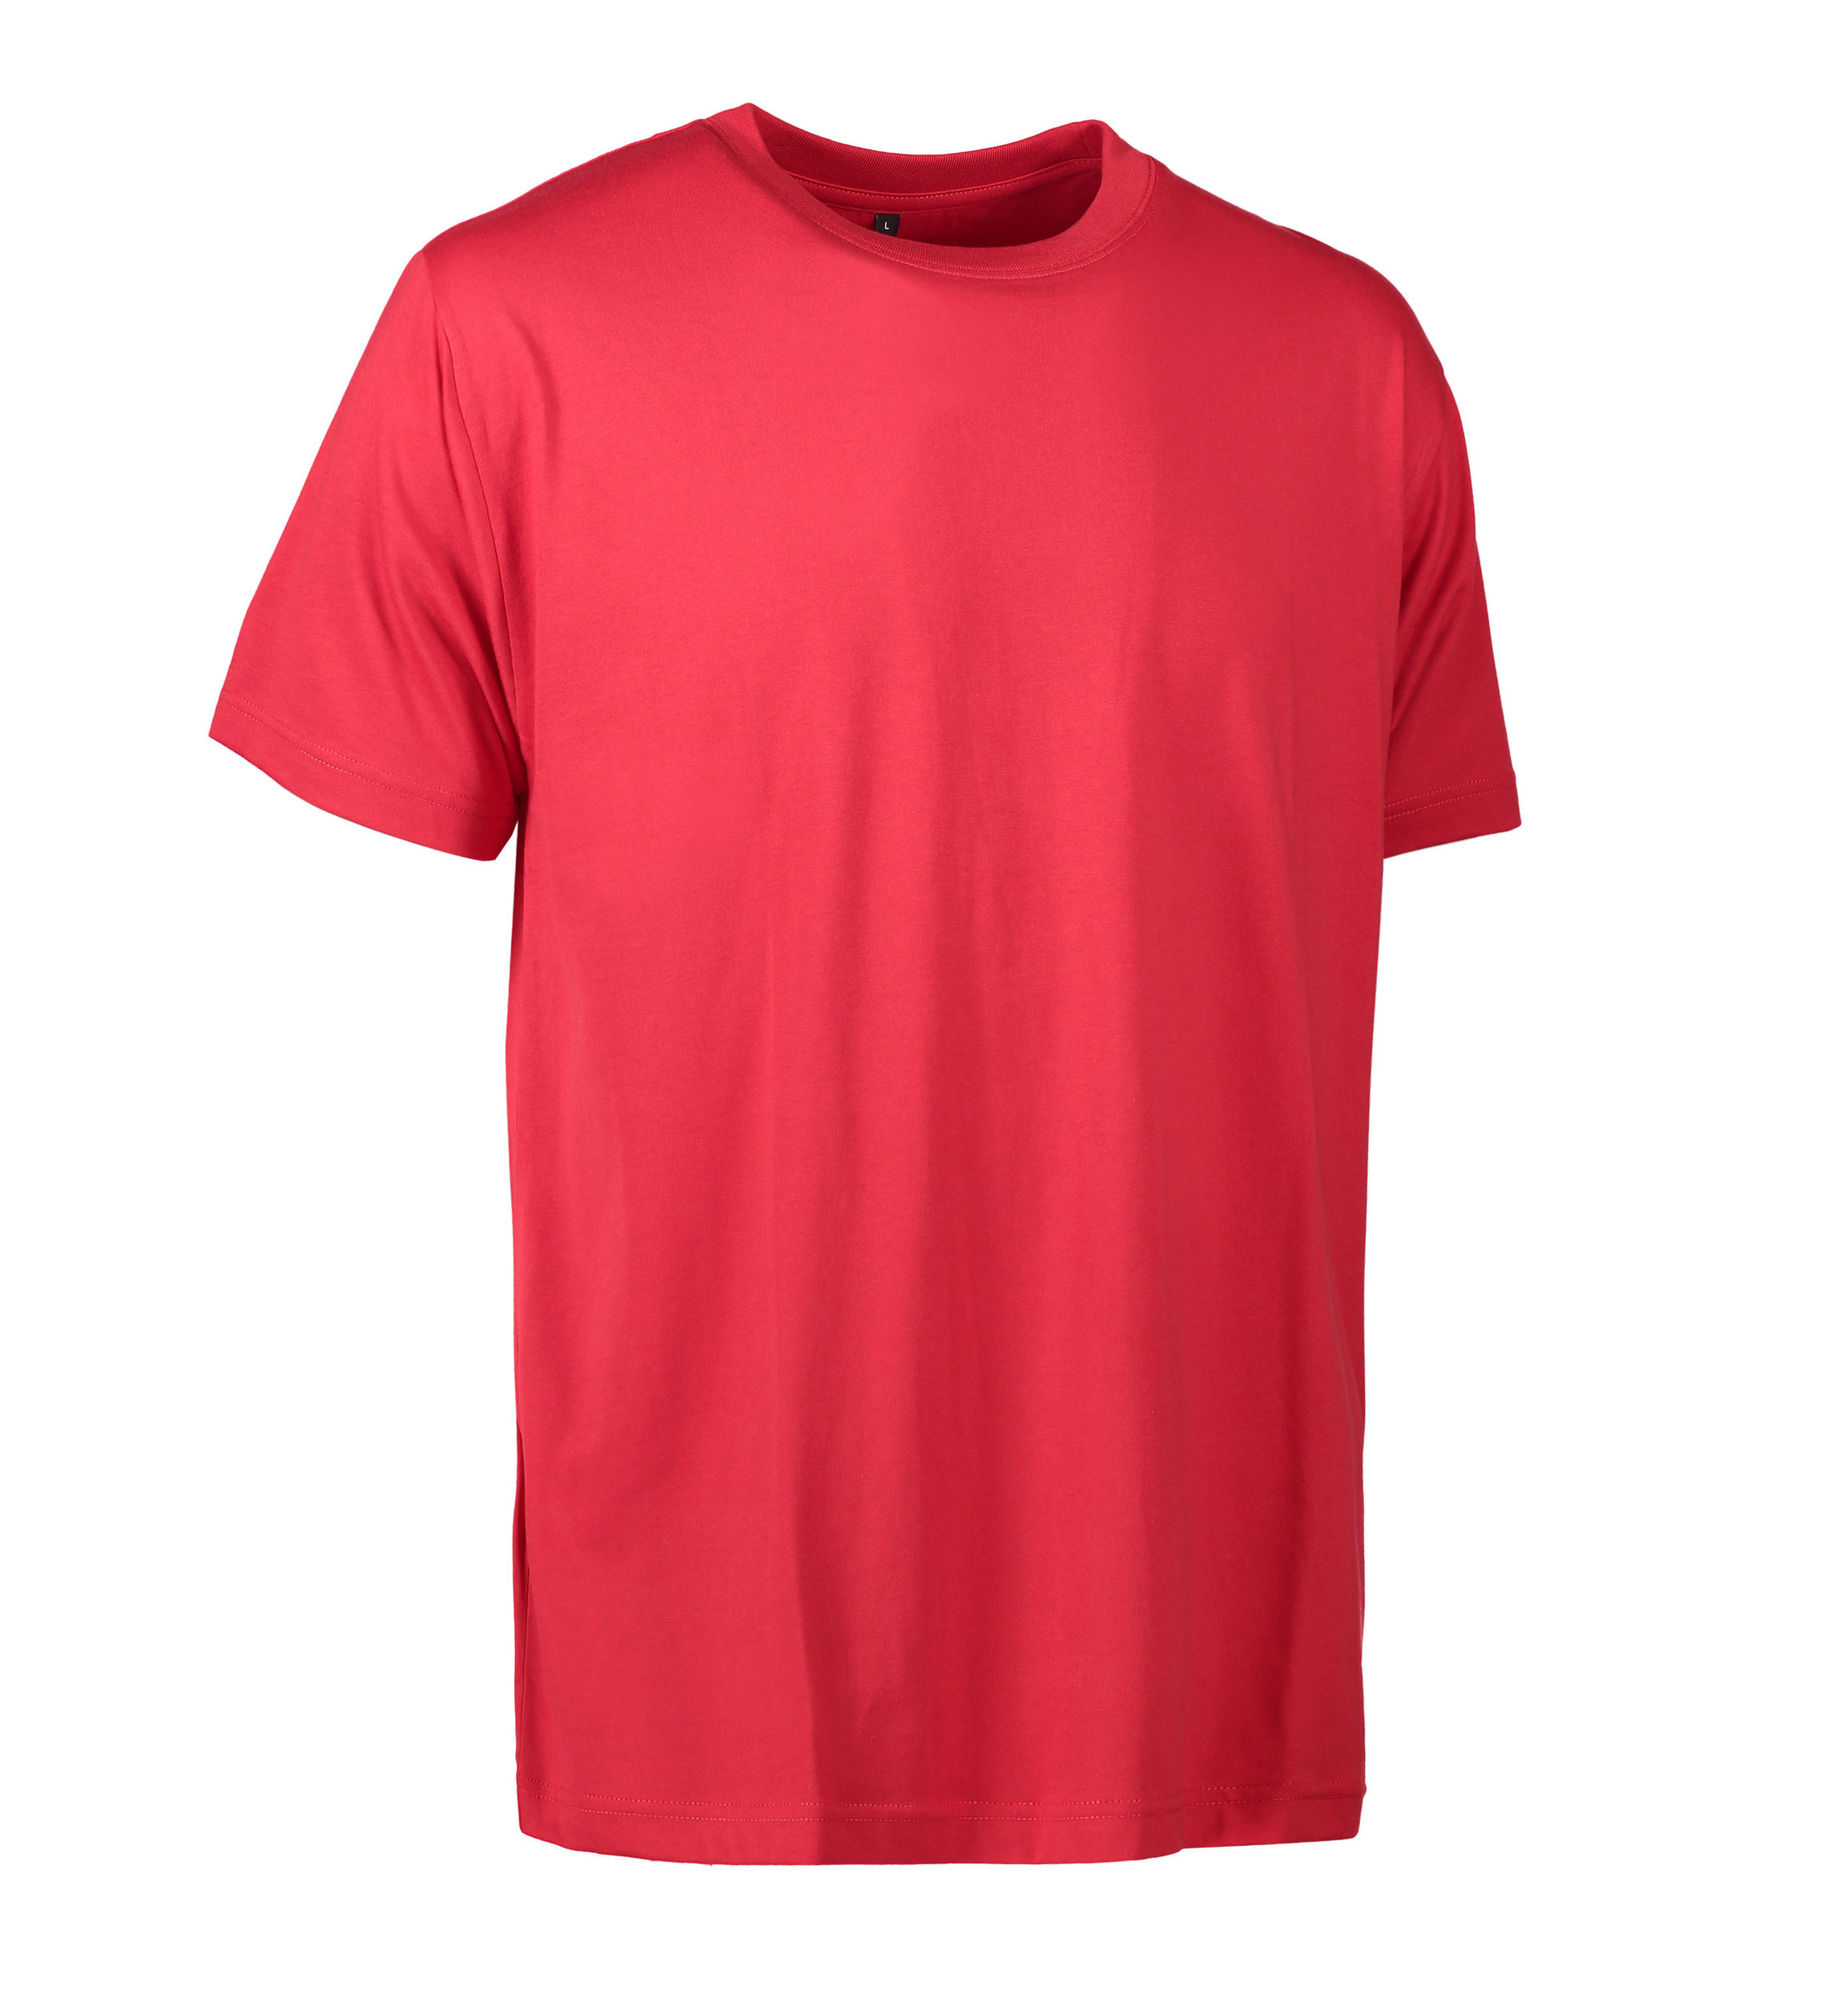 Billede af Slidstærk t-shirt i rød til mænd - S hos Sygeplejebutikken.dk